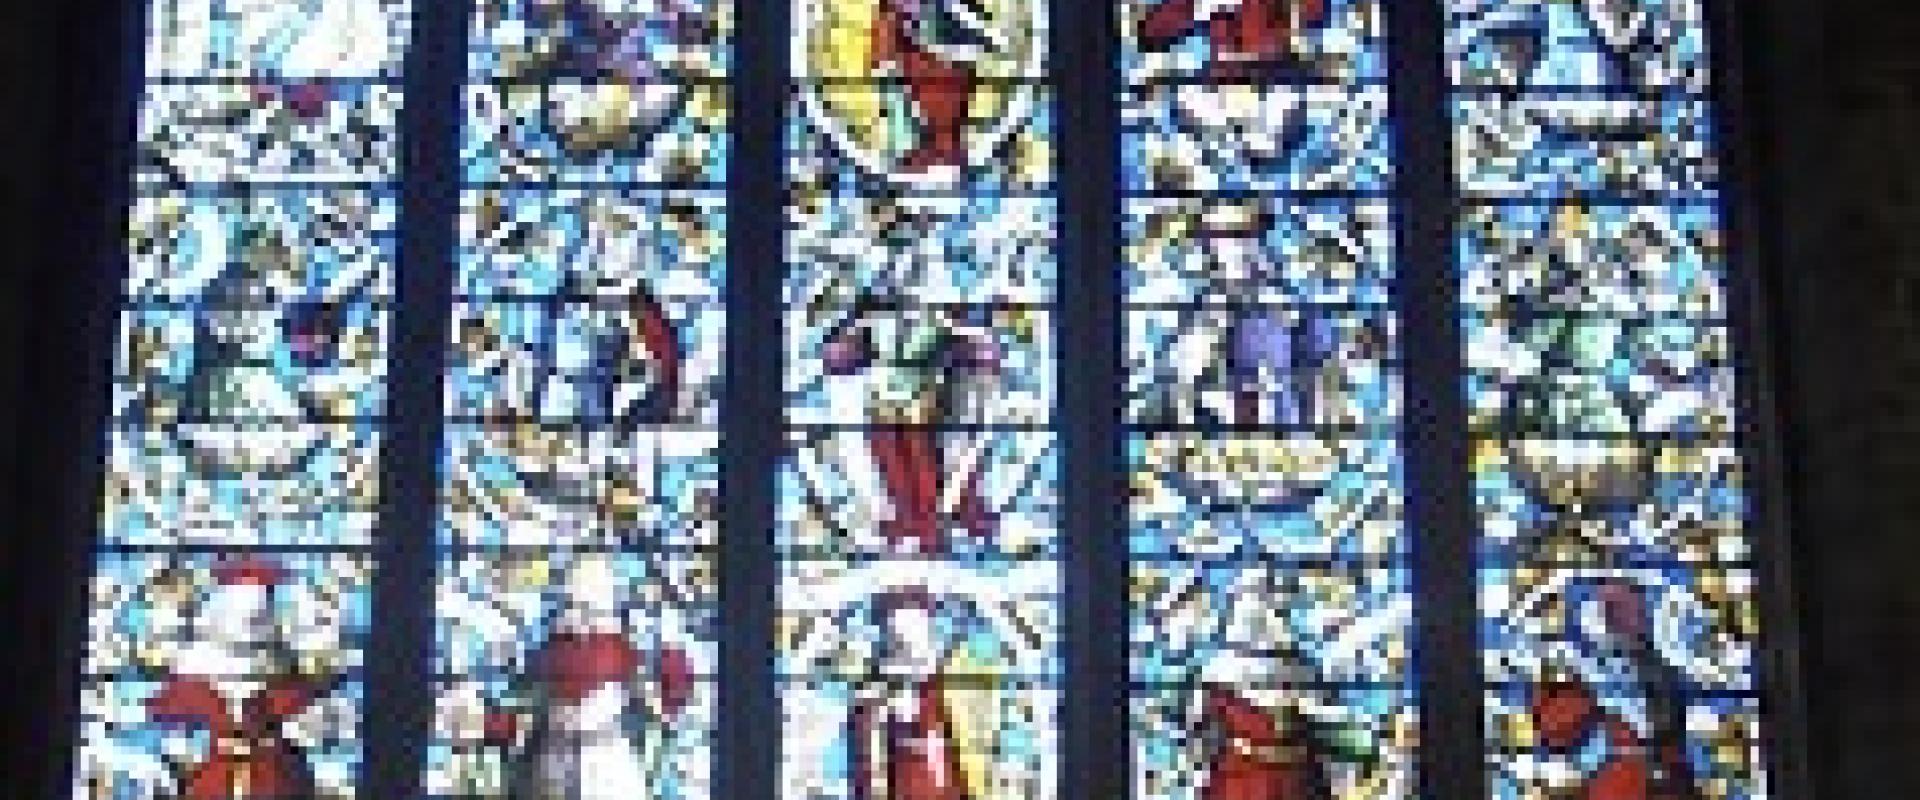 stained glass window in St. Dyfnog’s Church, Llanrhaeadr yng Nghinmeirch